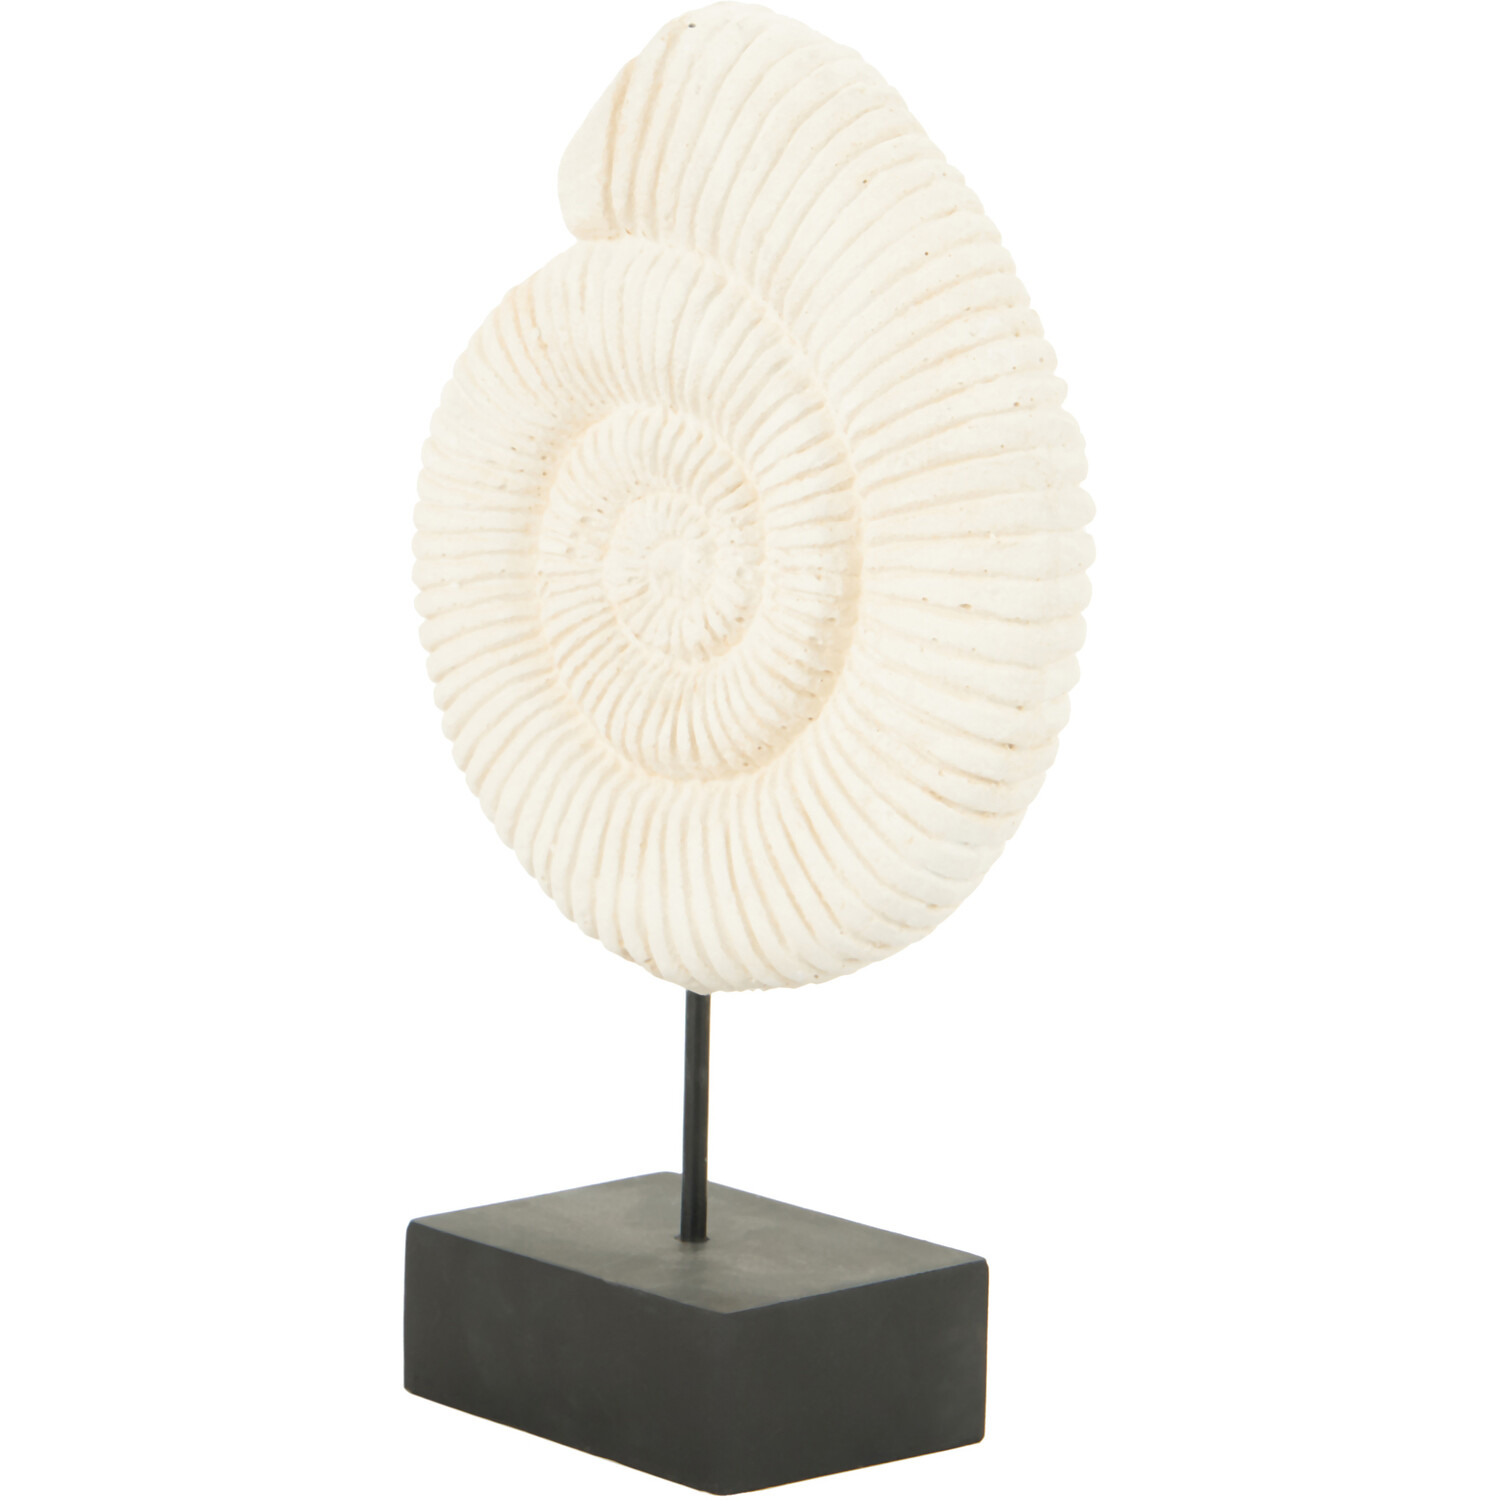 Mari Shell Ornament - White Image 2